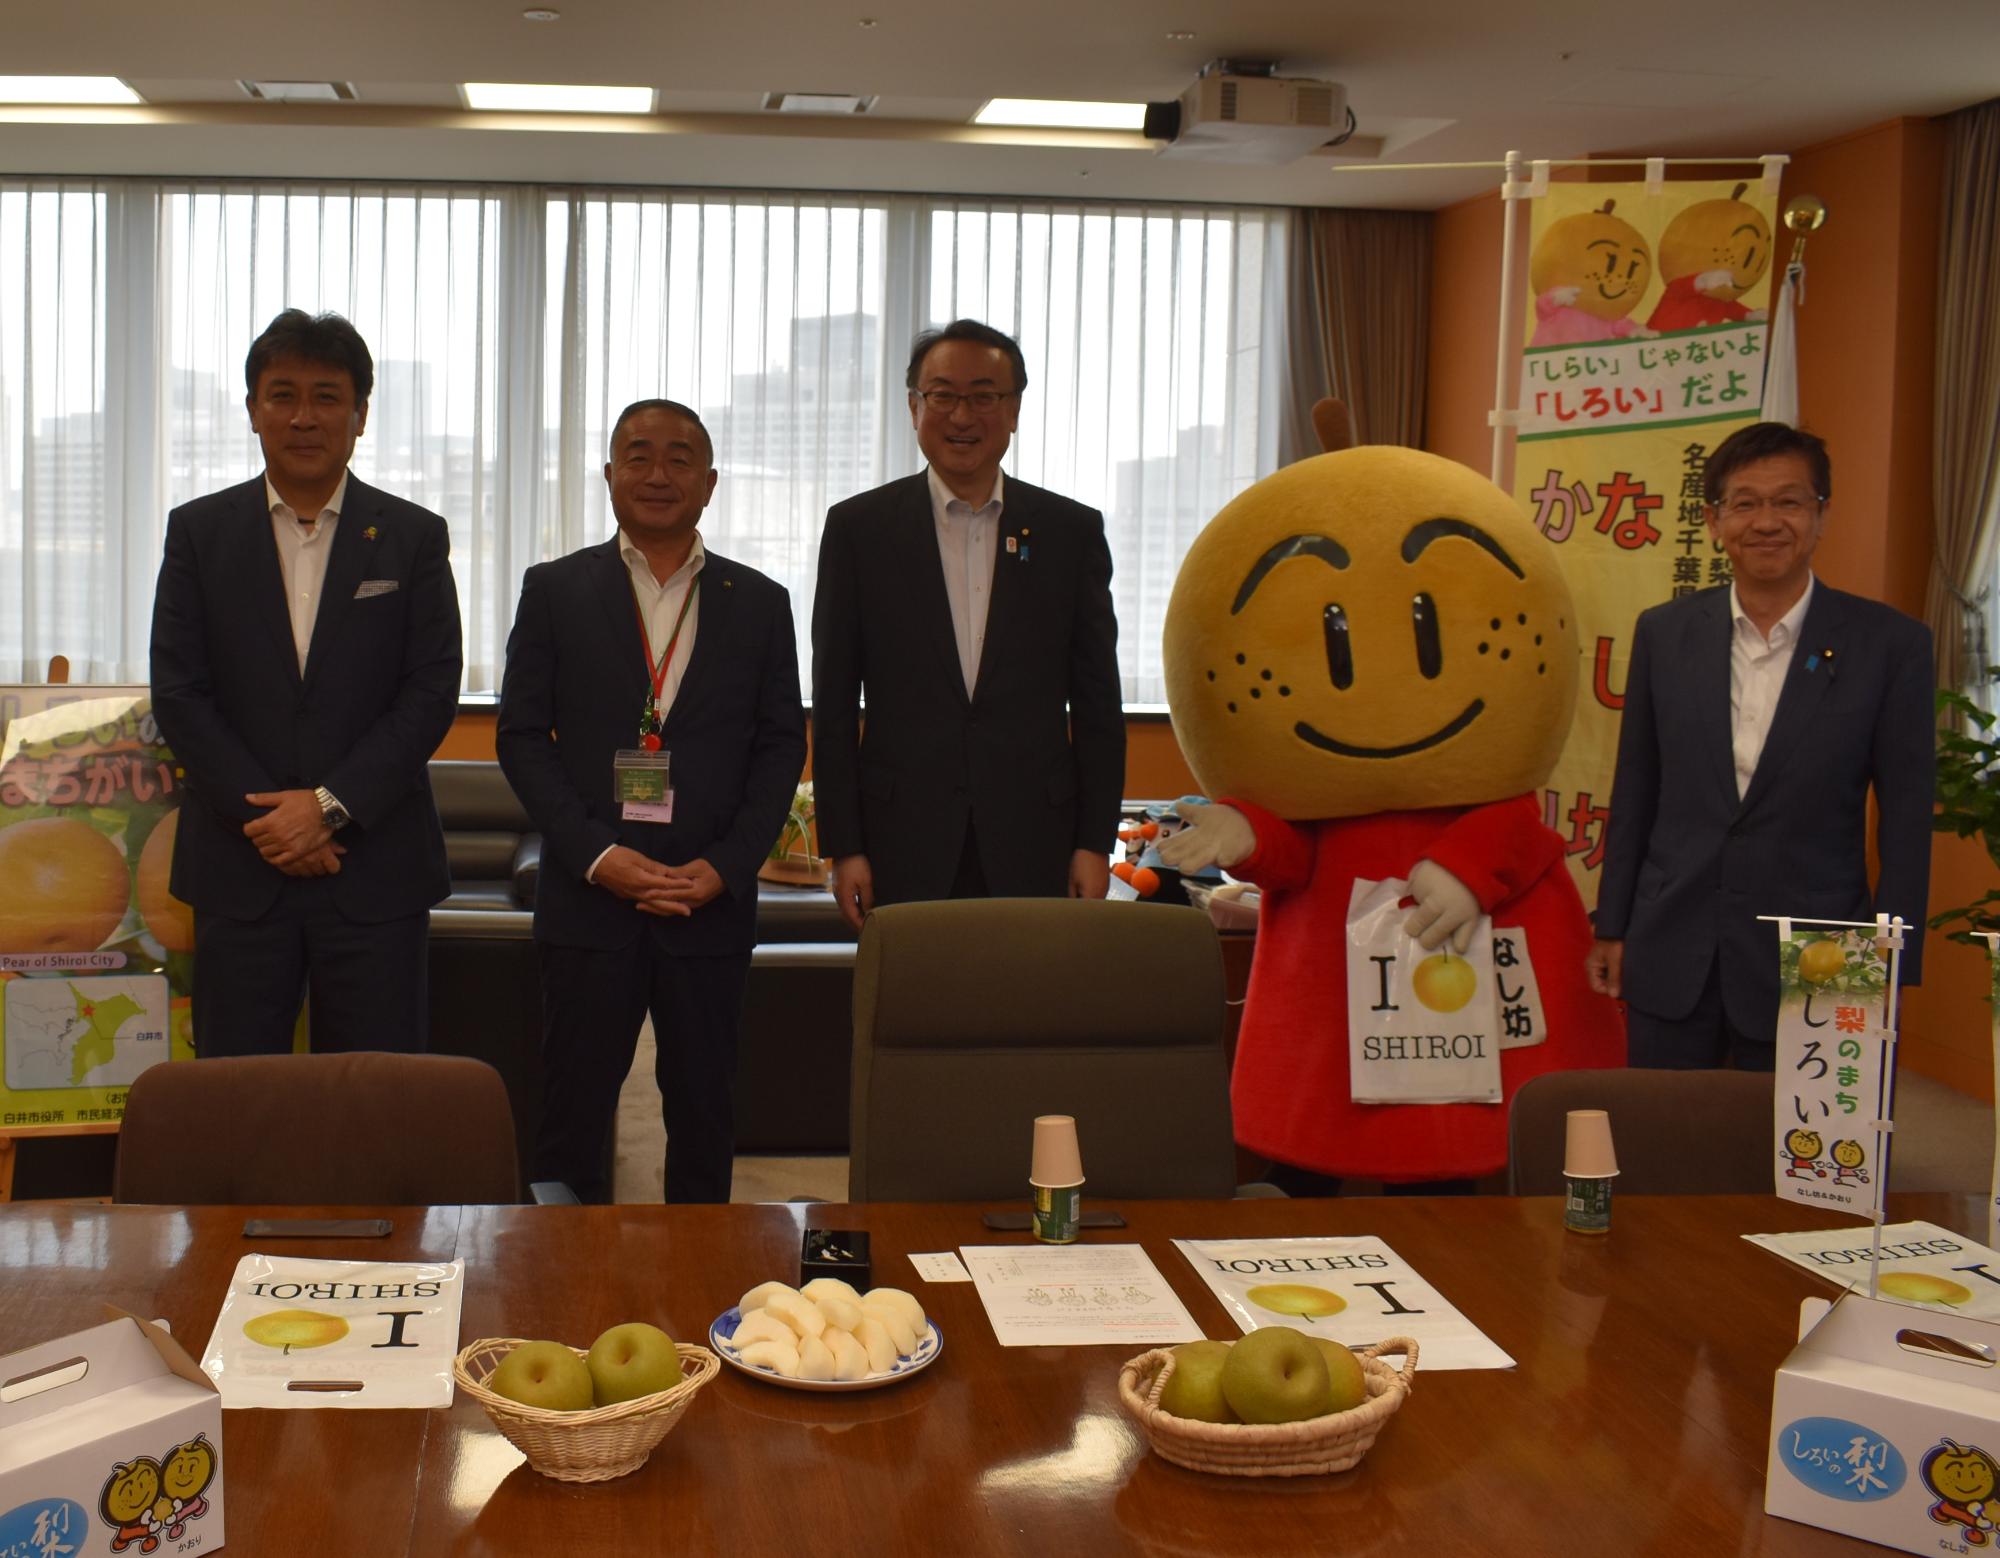 写真左から山下副市長、笠井市長、岡田大臣、なし坊、松本尚衆議院議員